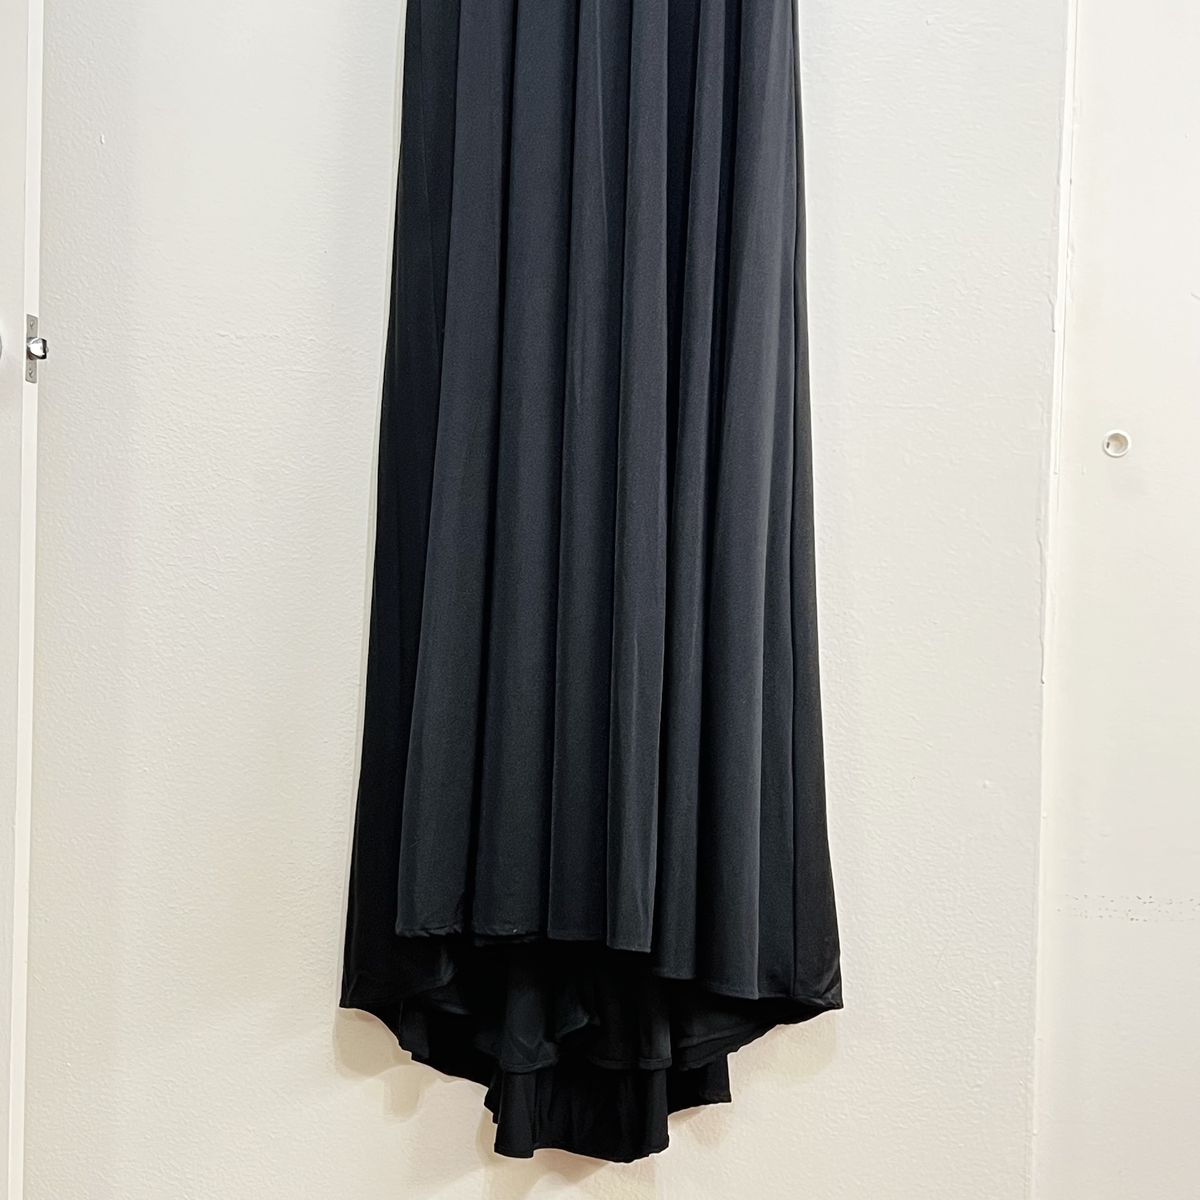 Style 28547 La Femme Size 8 Plunge Black Side Slit Dress on Queenly